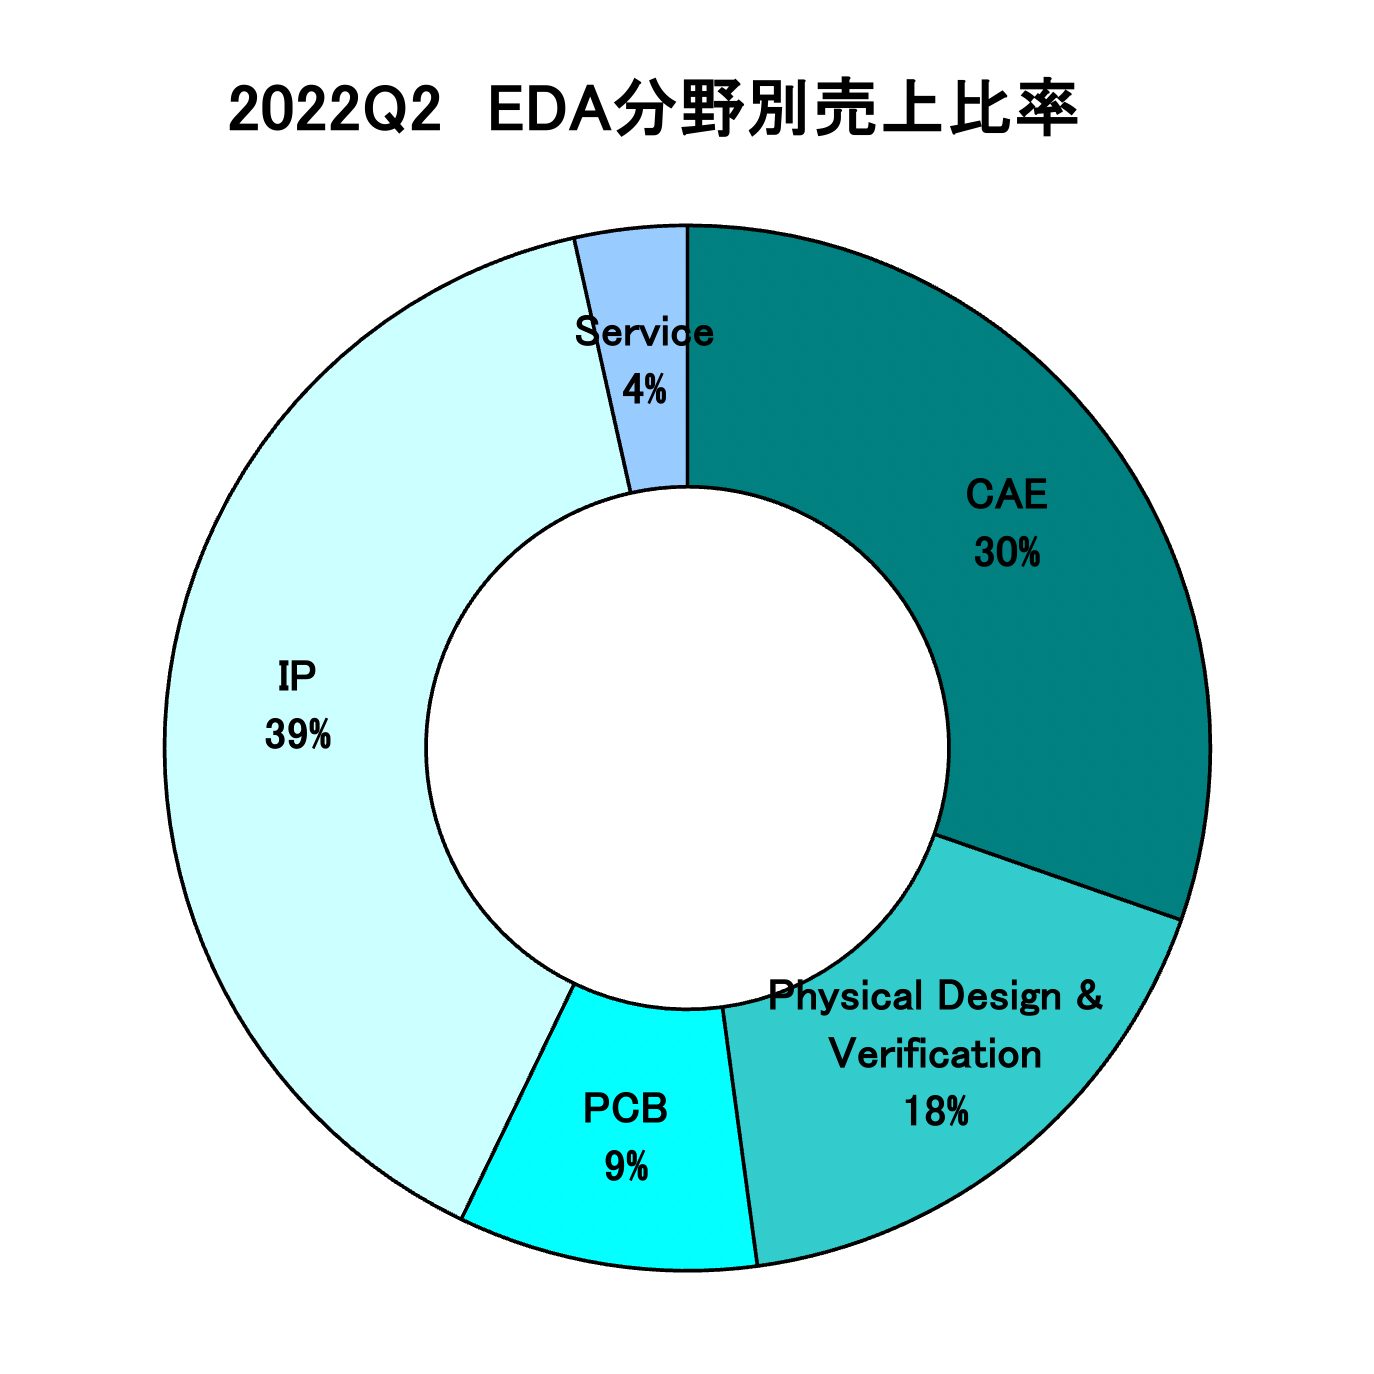 https://www.eda-express.com/%E3%82%B9%E3%82%AF%E3%83%AA%E3%83%BC%E3%83%B3%E3%82%B7%E3%83%A7%E3%83%83%E3%83%88%202022-10-18%206.51.55.png